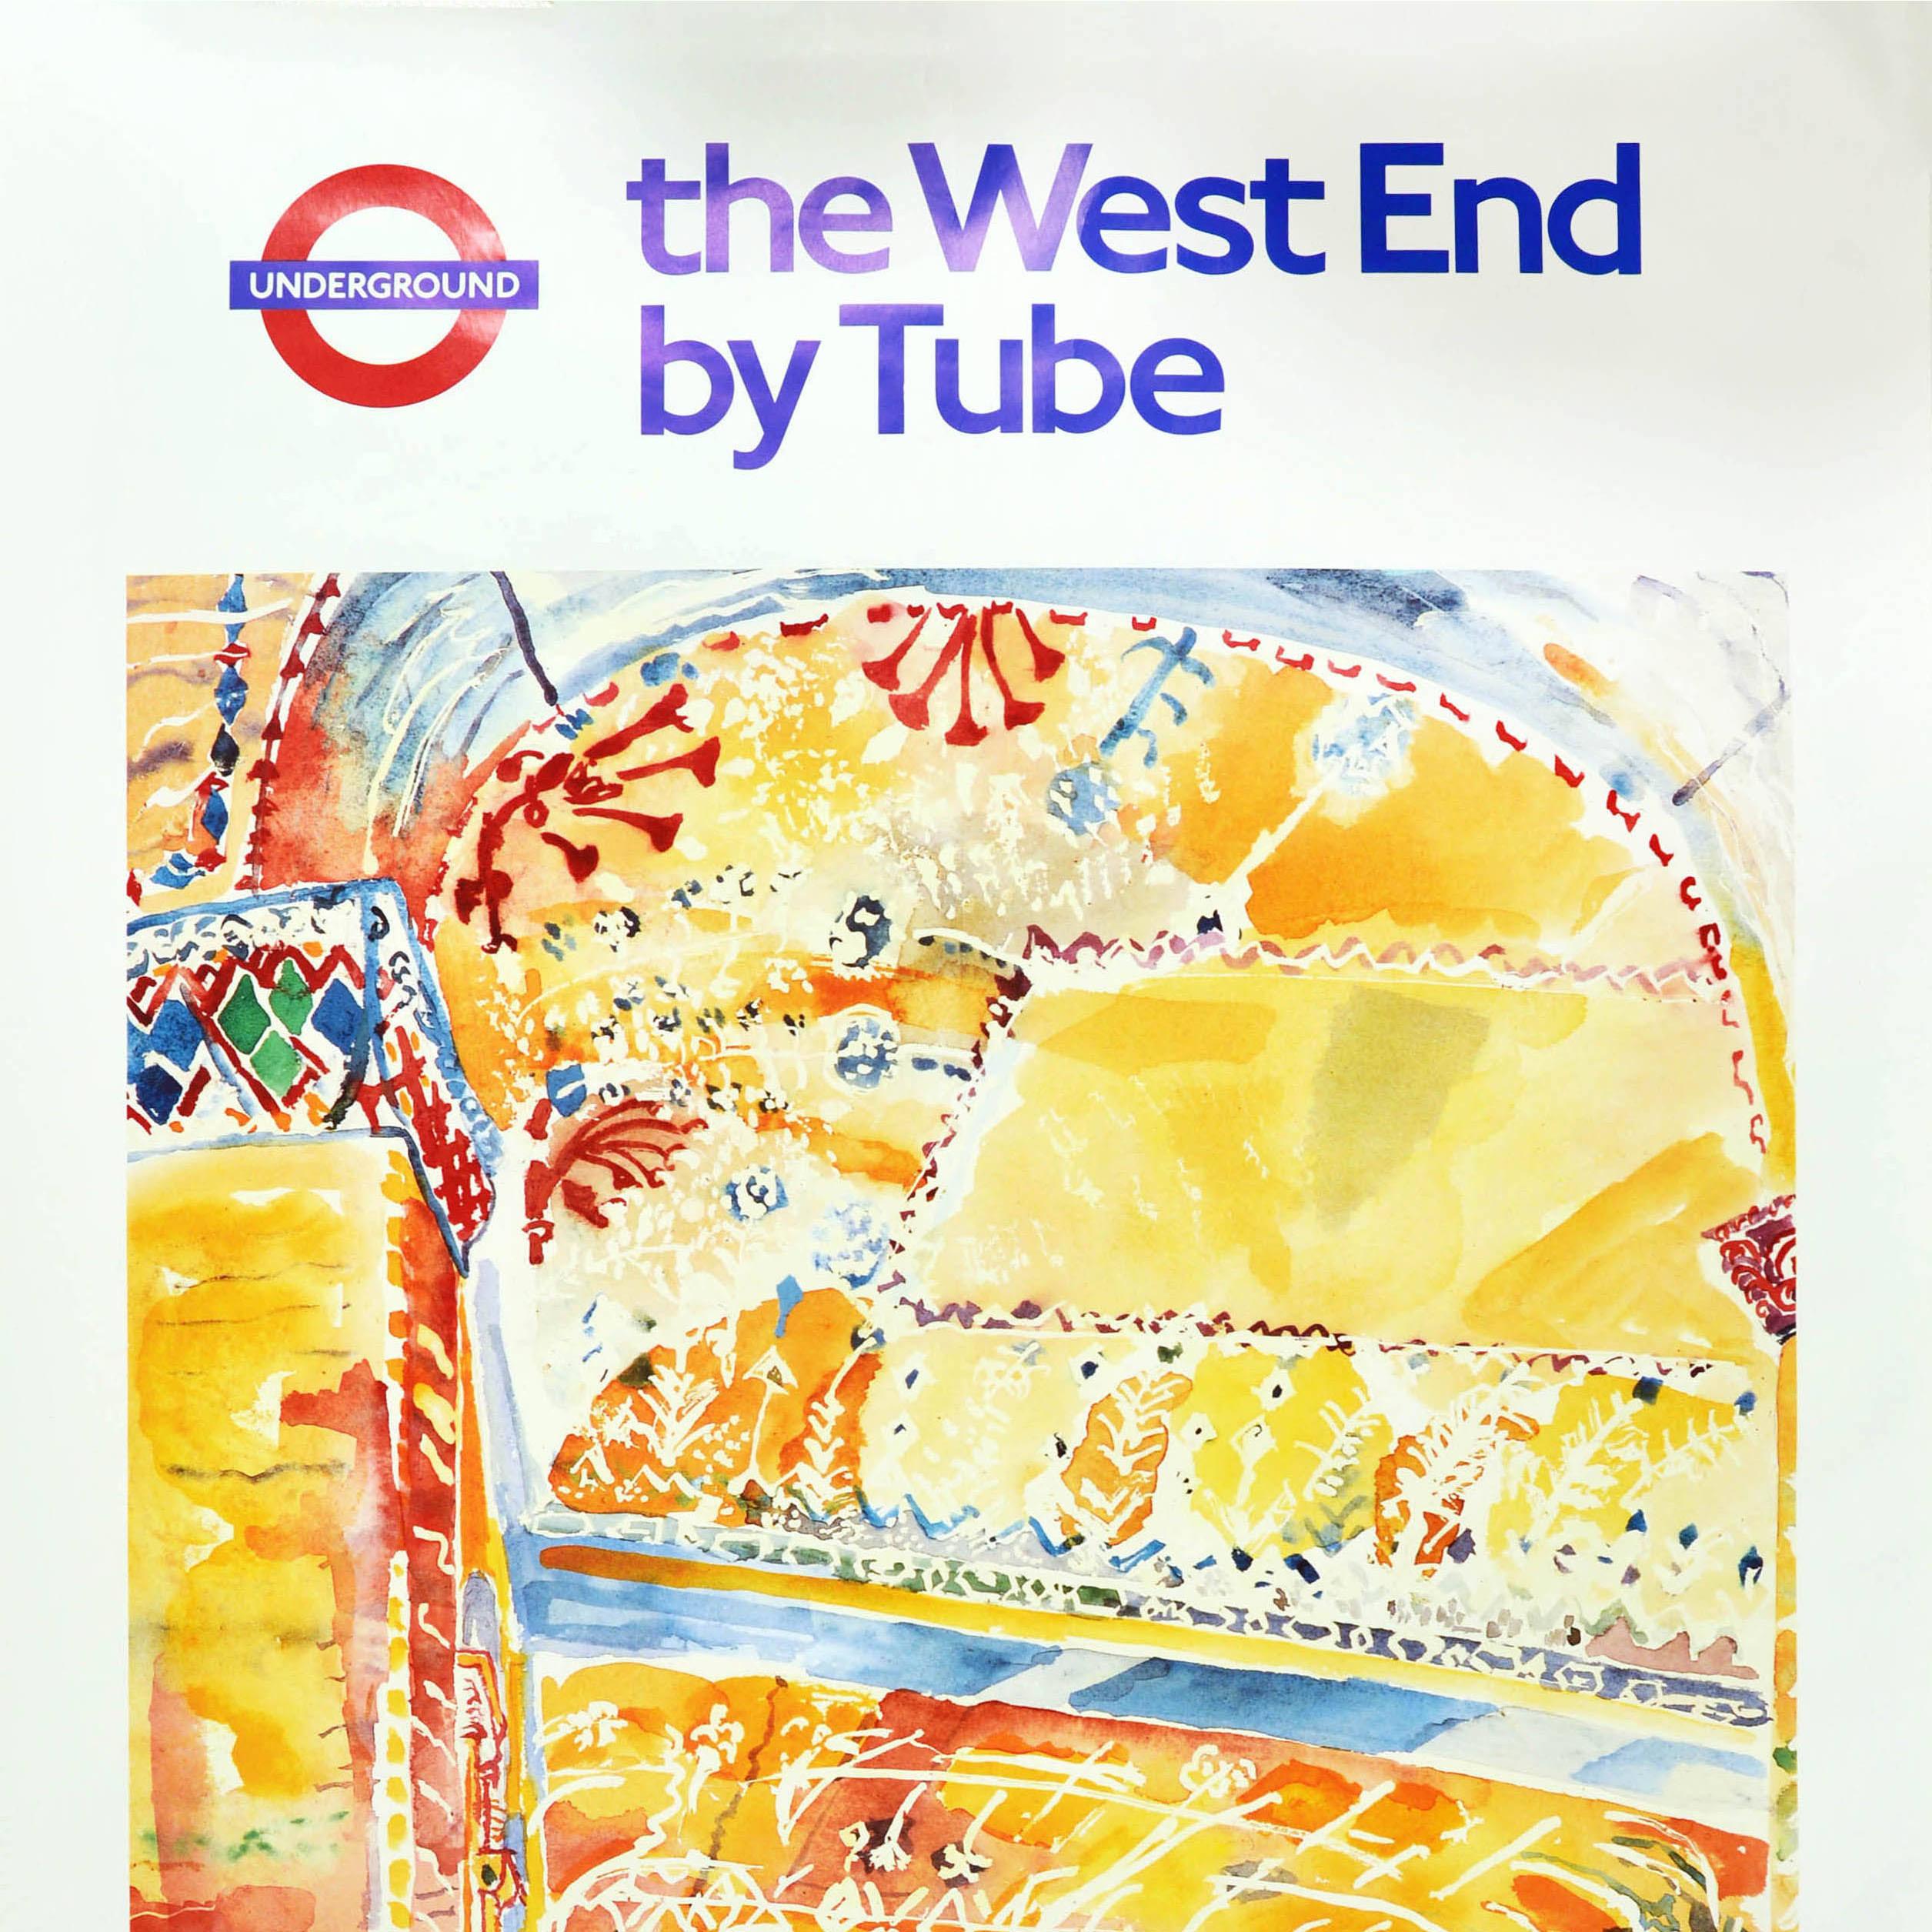 Affiche de voyage vintage originale London Underground West End par Tube Criterion Art - Beige Print par Unknown